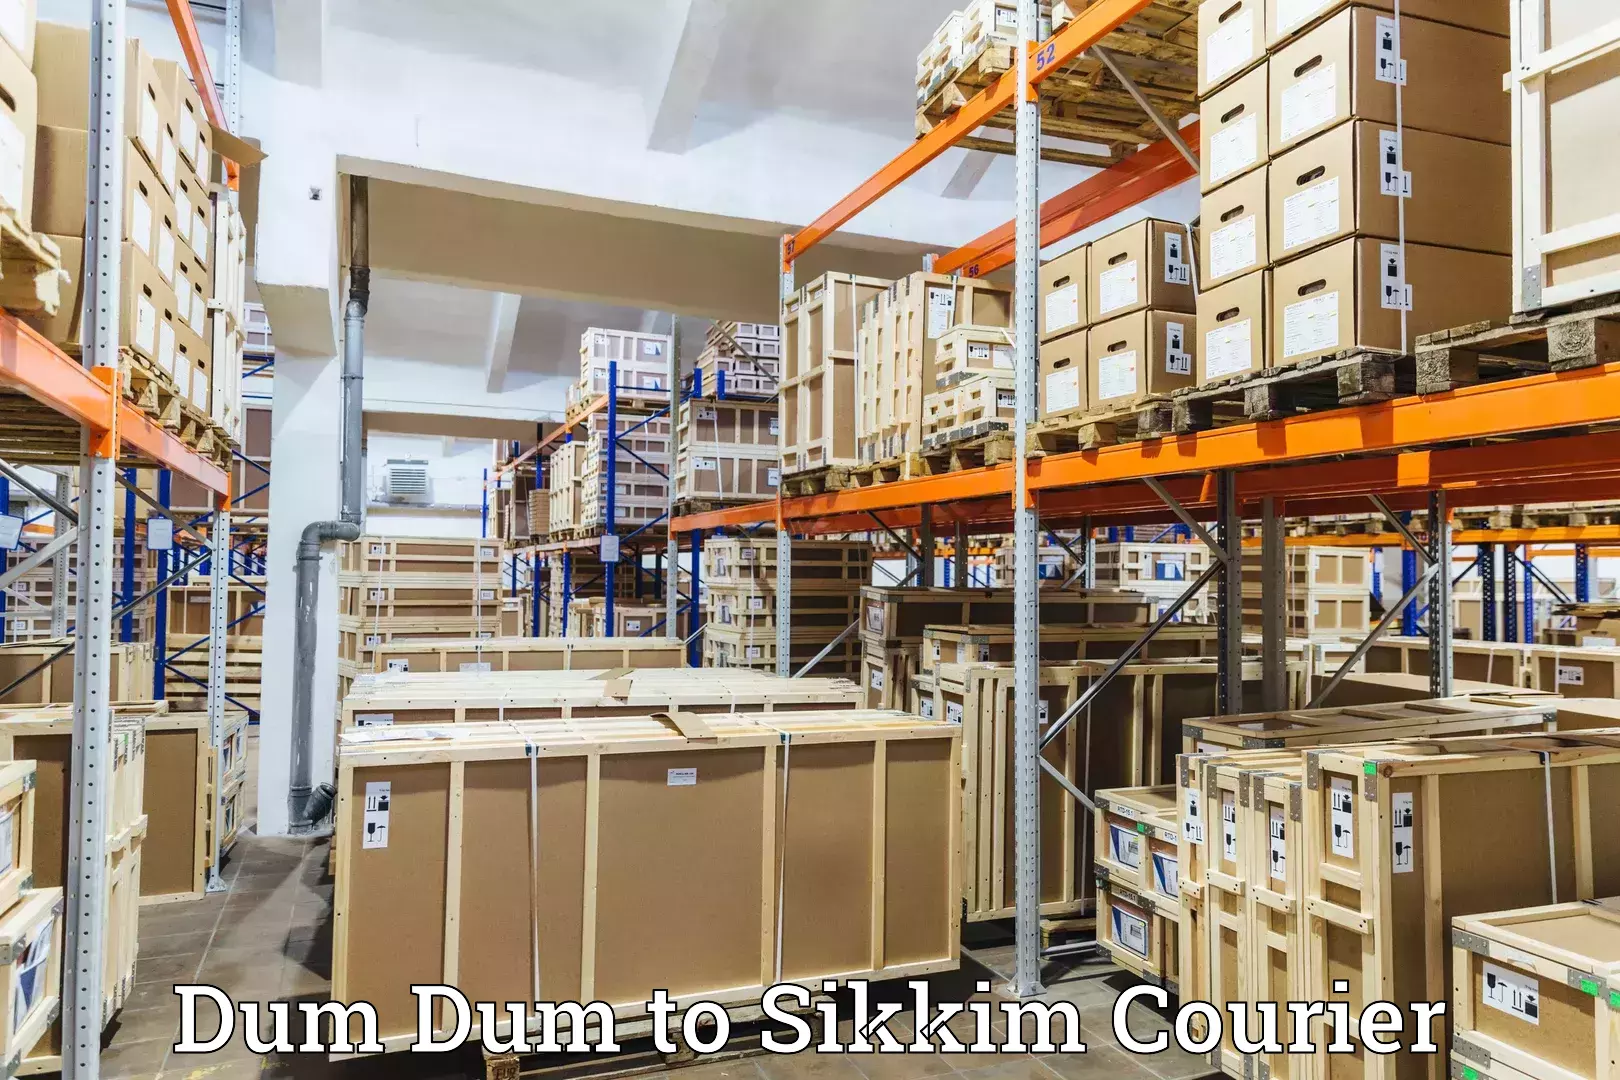 Urban courier service Dum Dum to North Sikkim